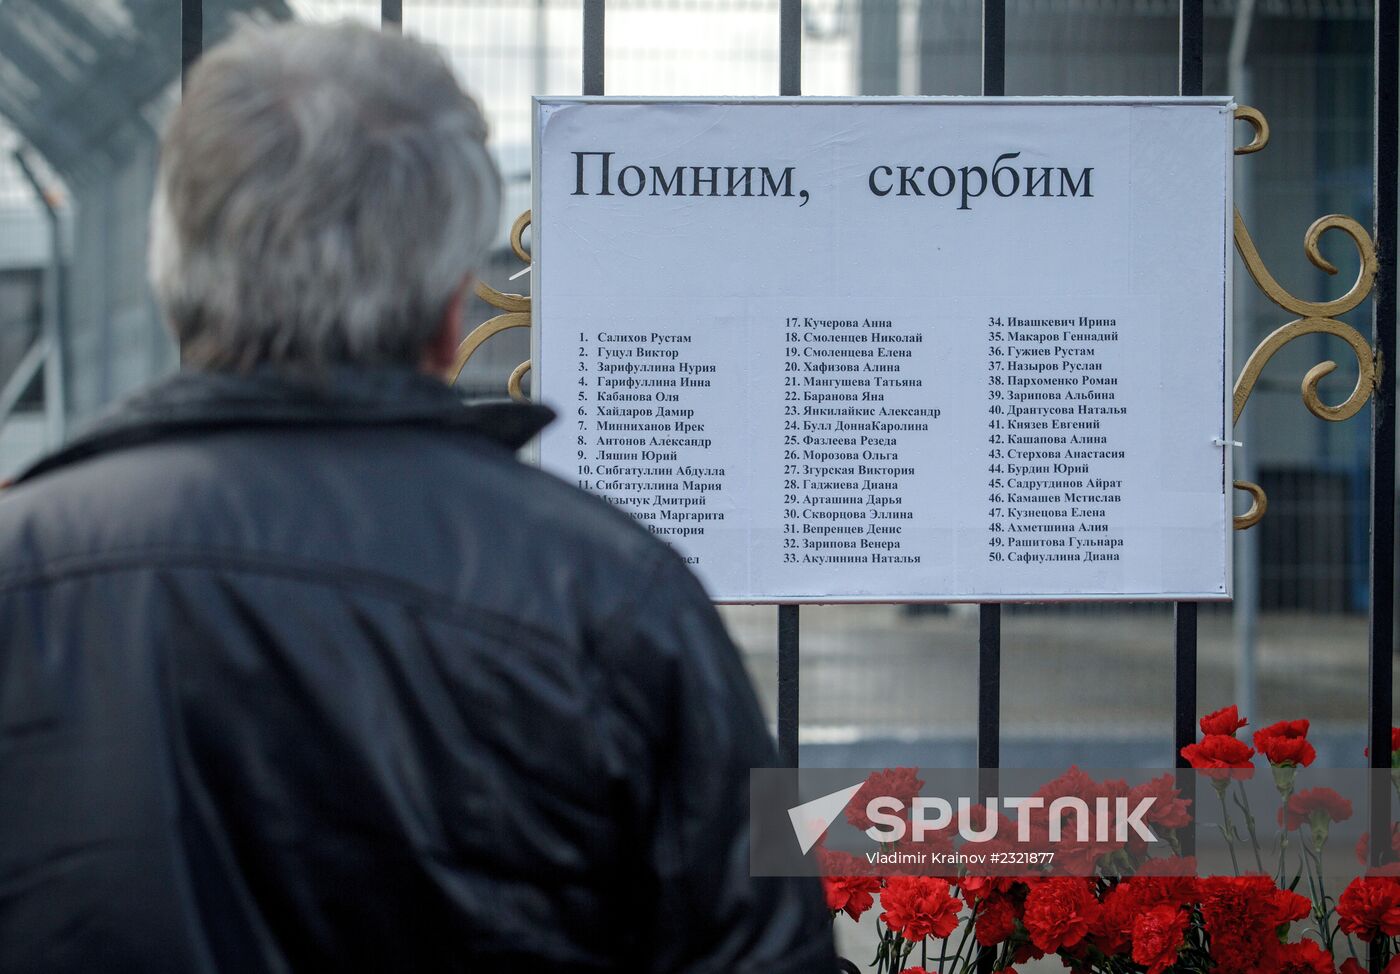 Kazan residents bring flowers in memory of Boeing 737 crash causalities